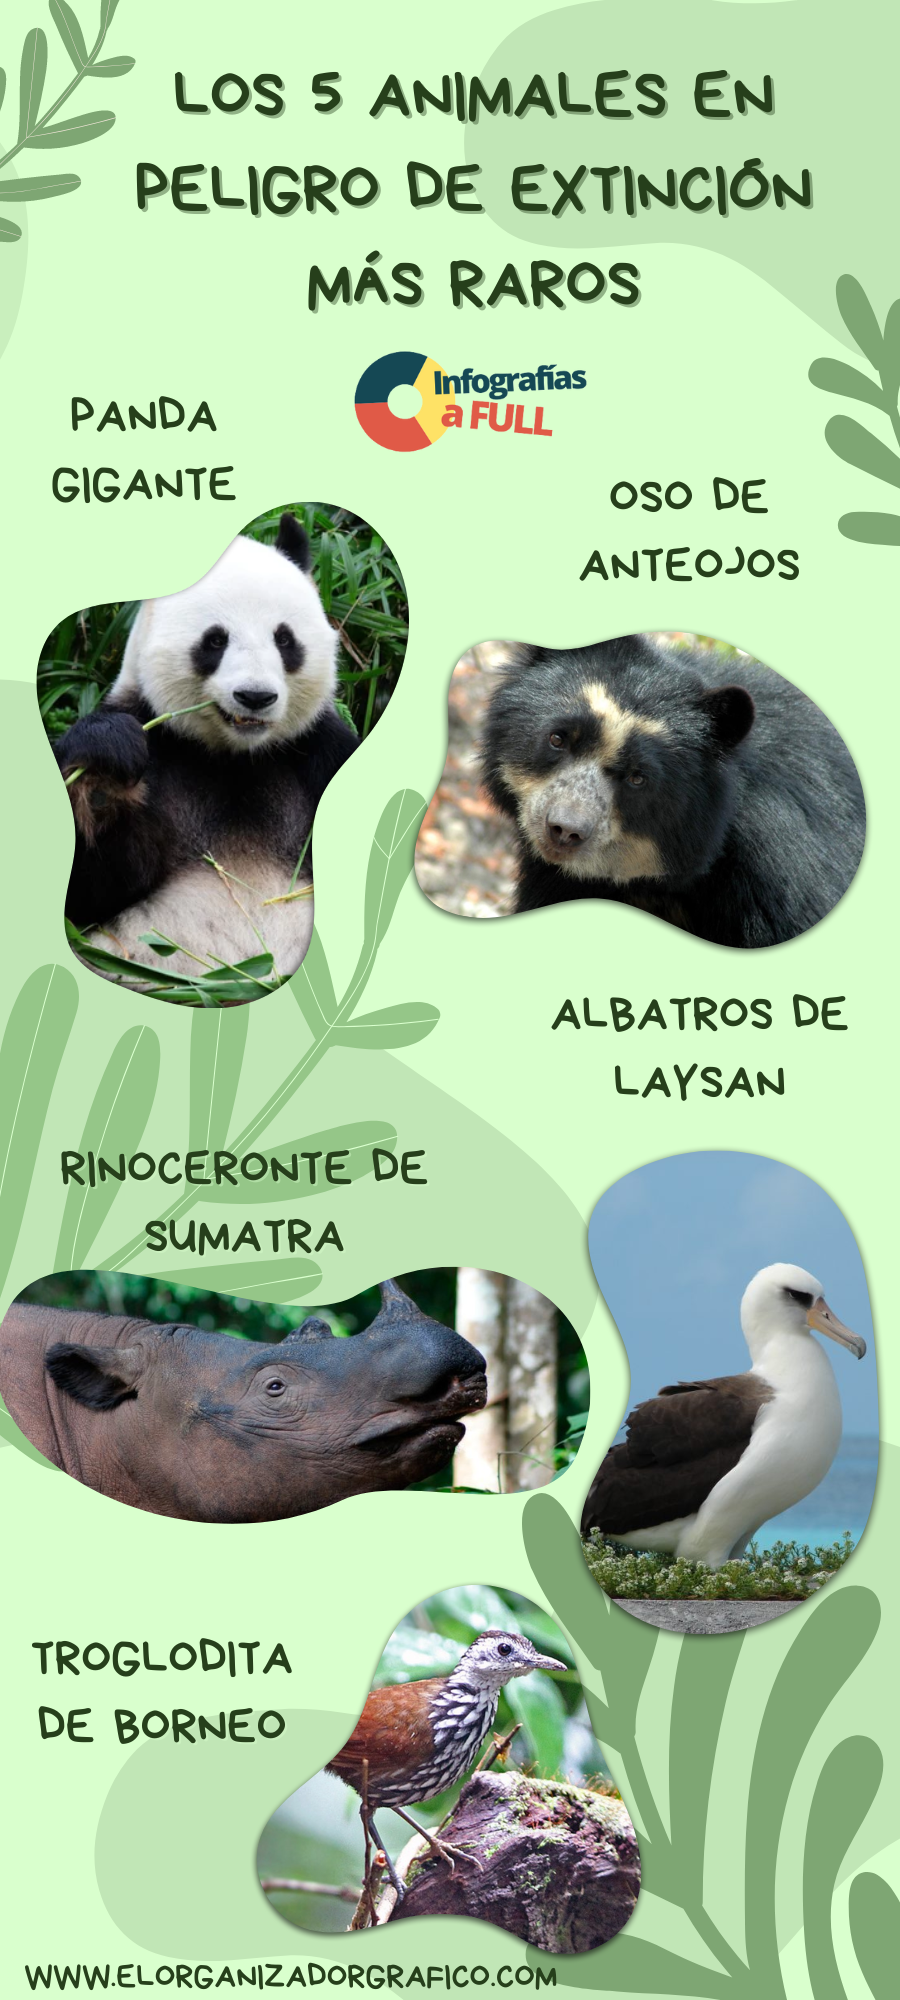 Infografía De Animales Mas Raros En Peligro De Extincion